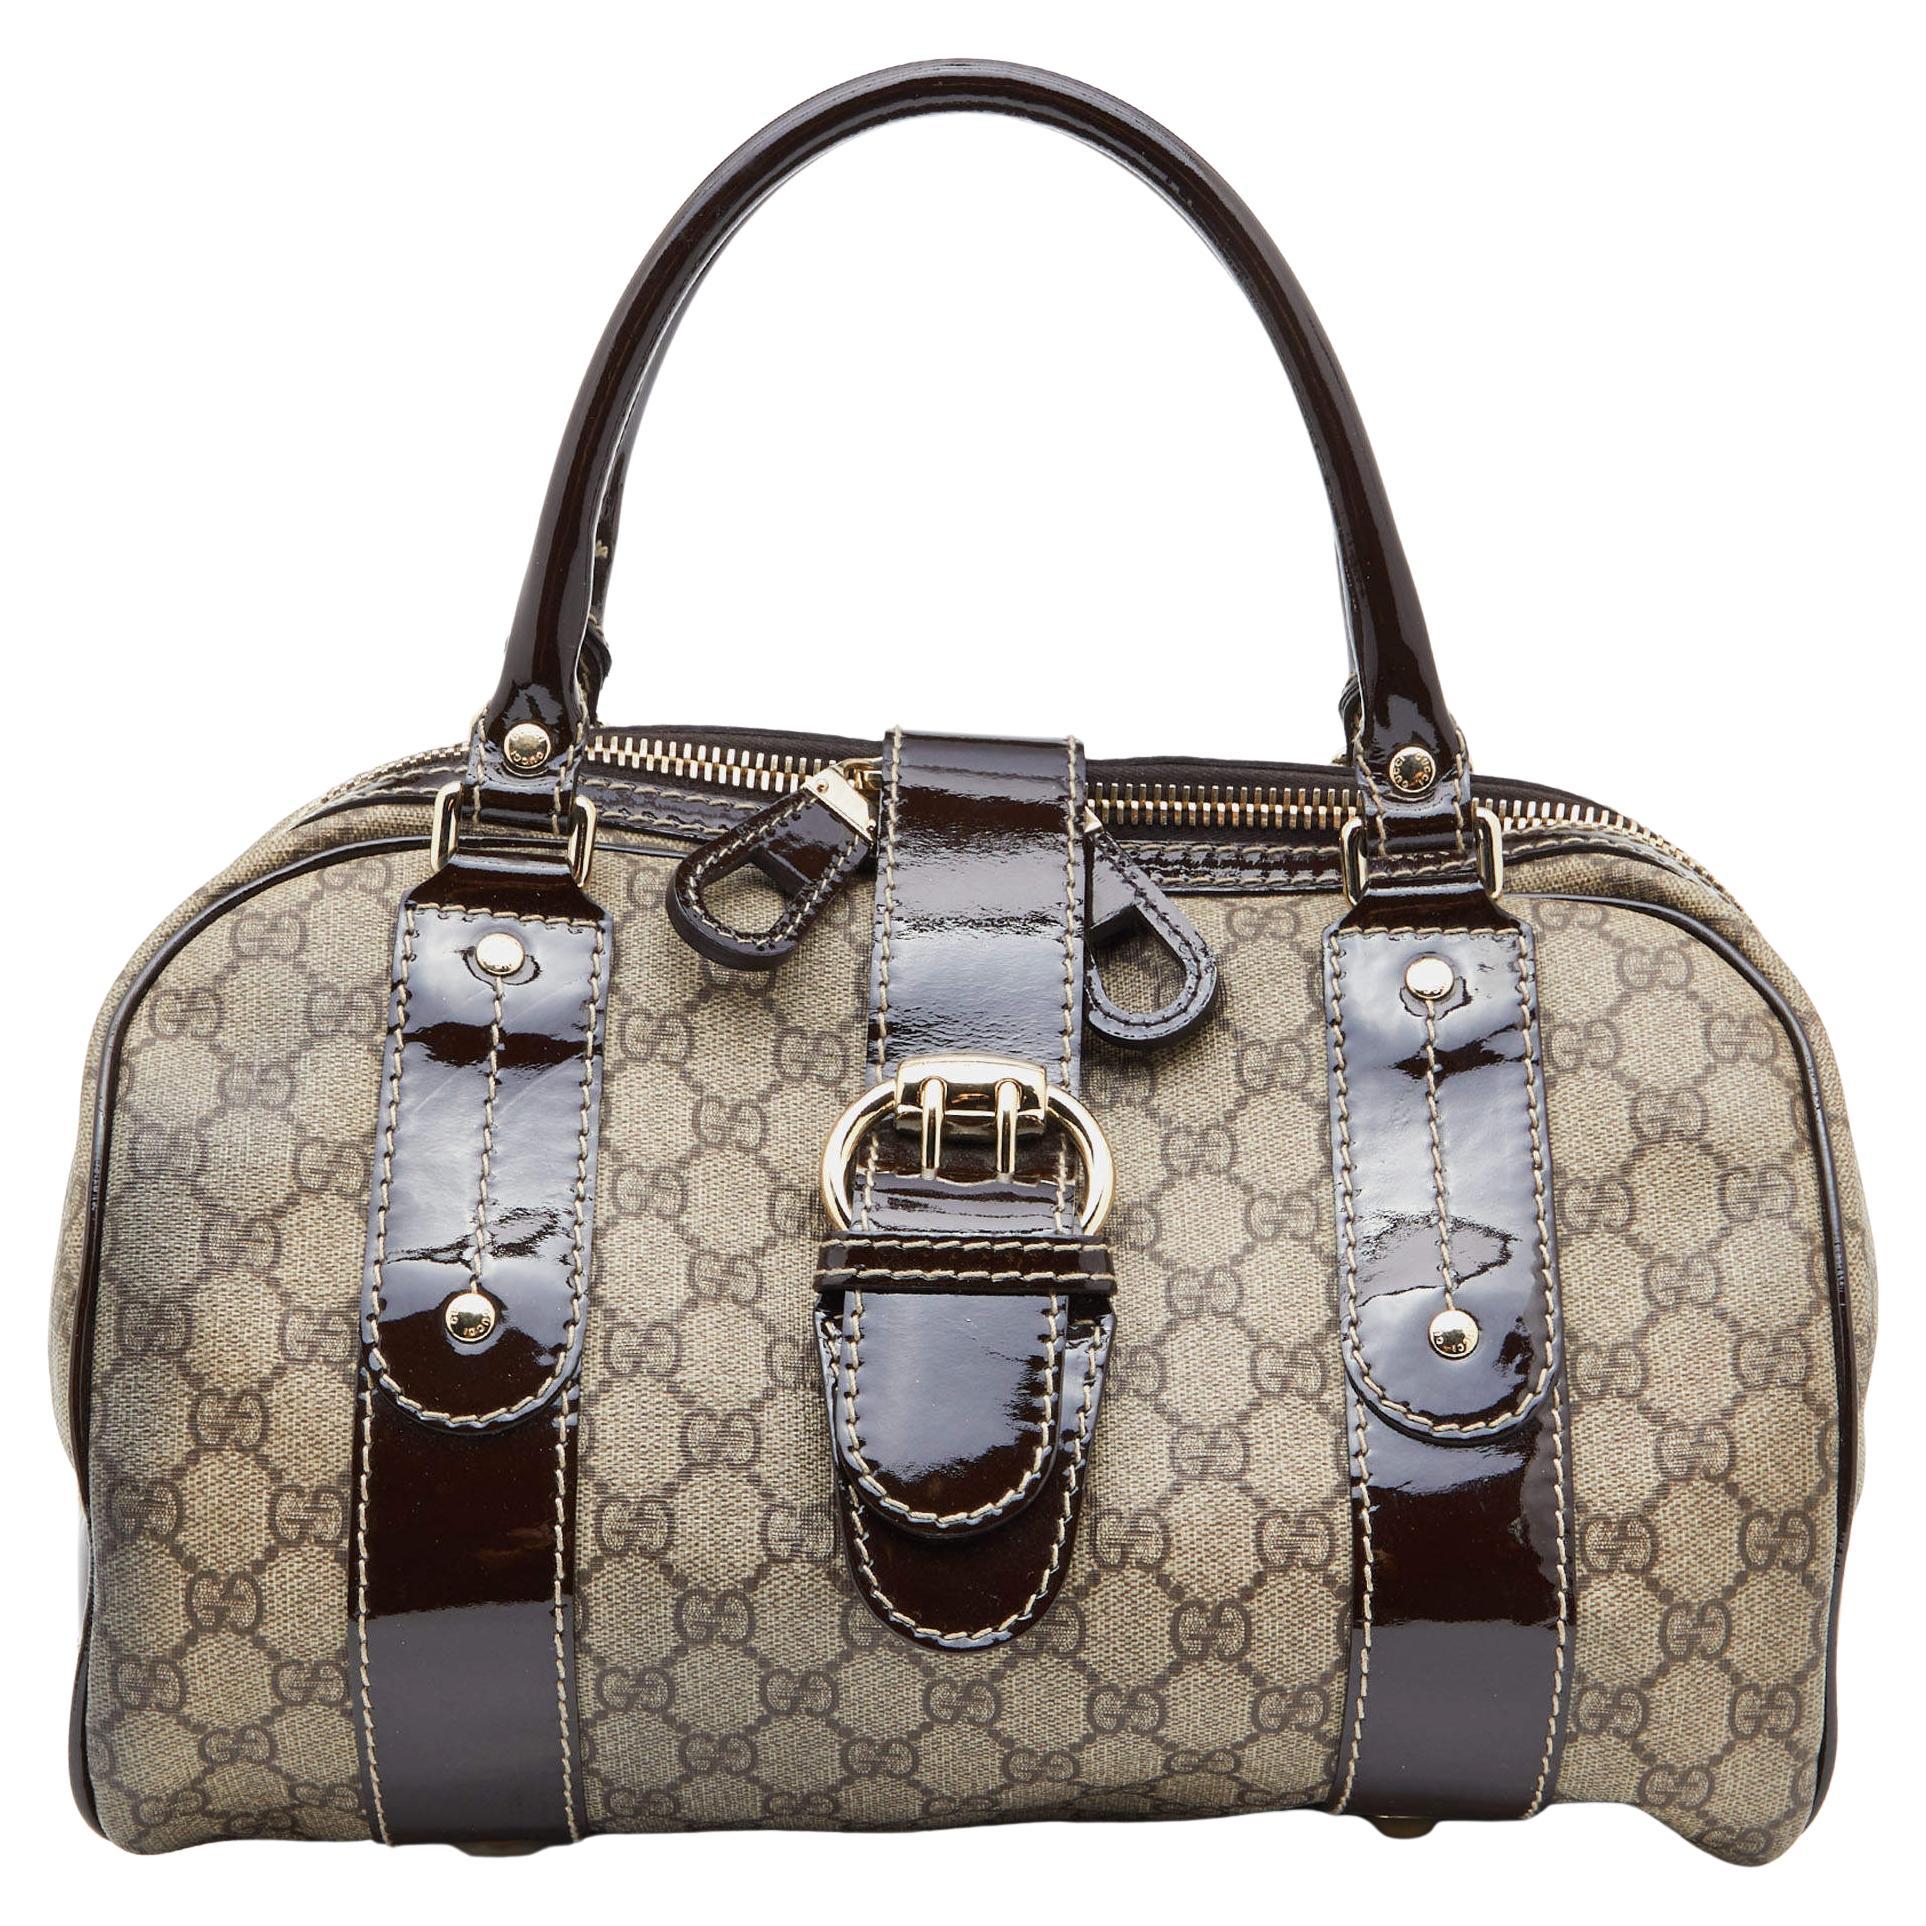 Gucci Handbag Gray - 89 For Sale on 1stDibs | gucci bag gray, gray